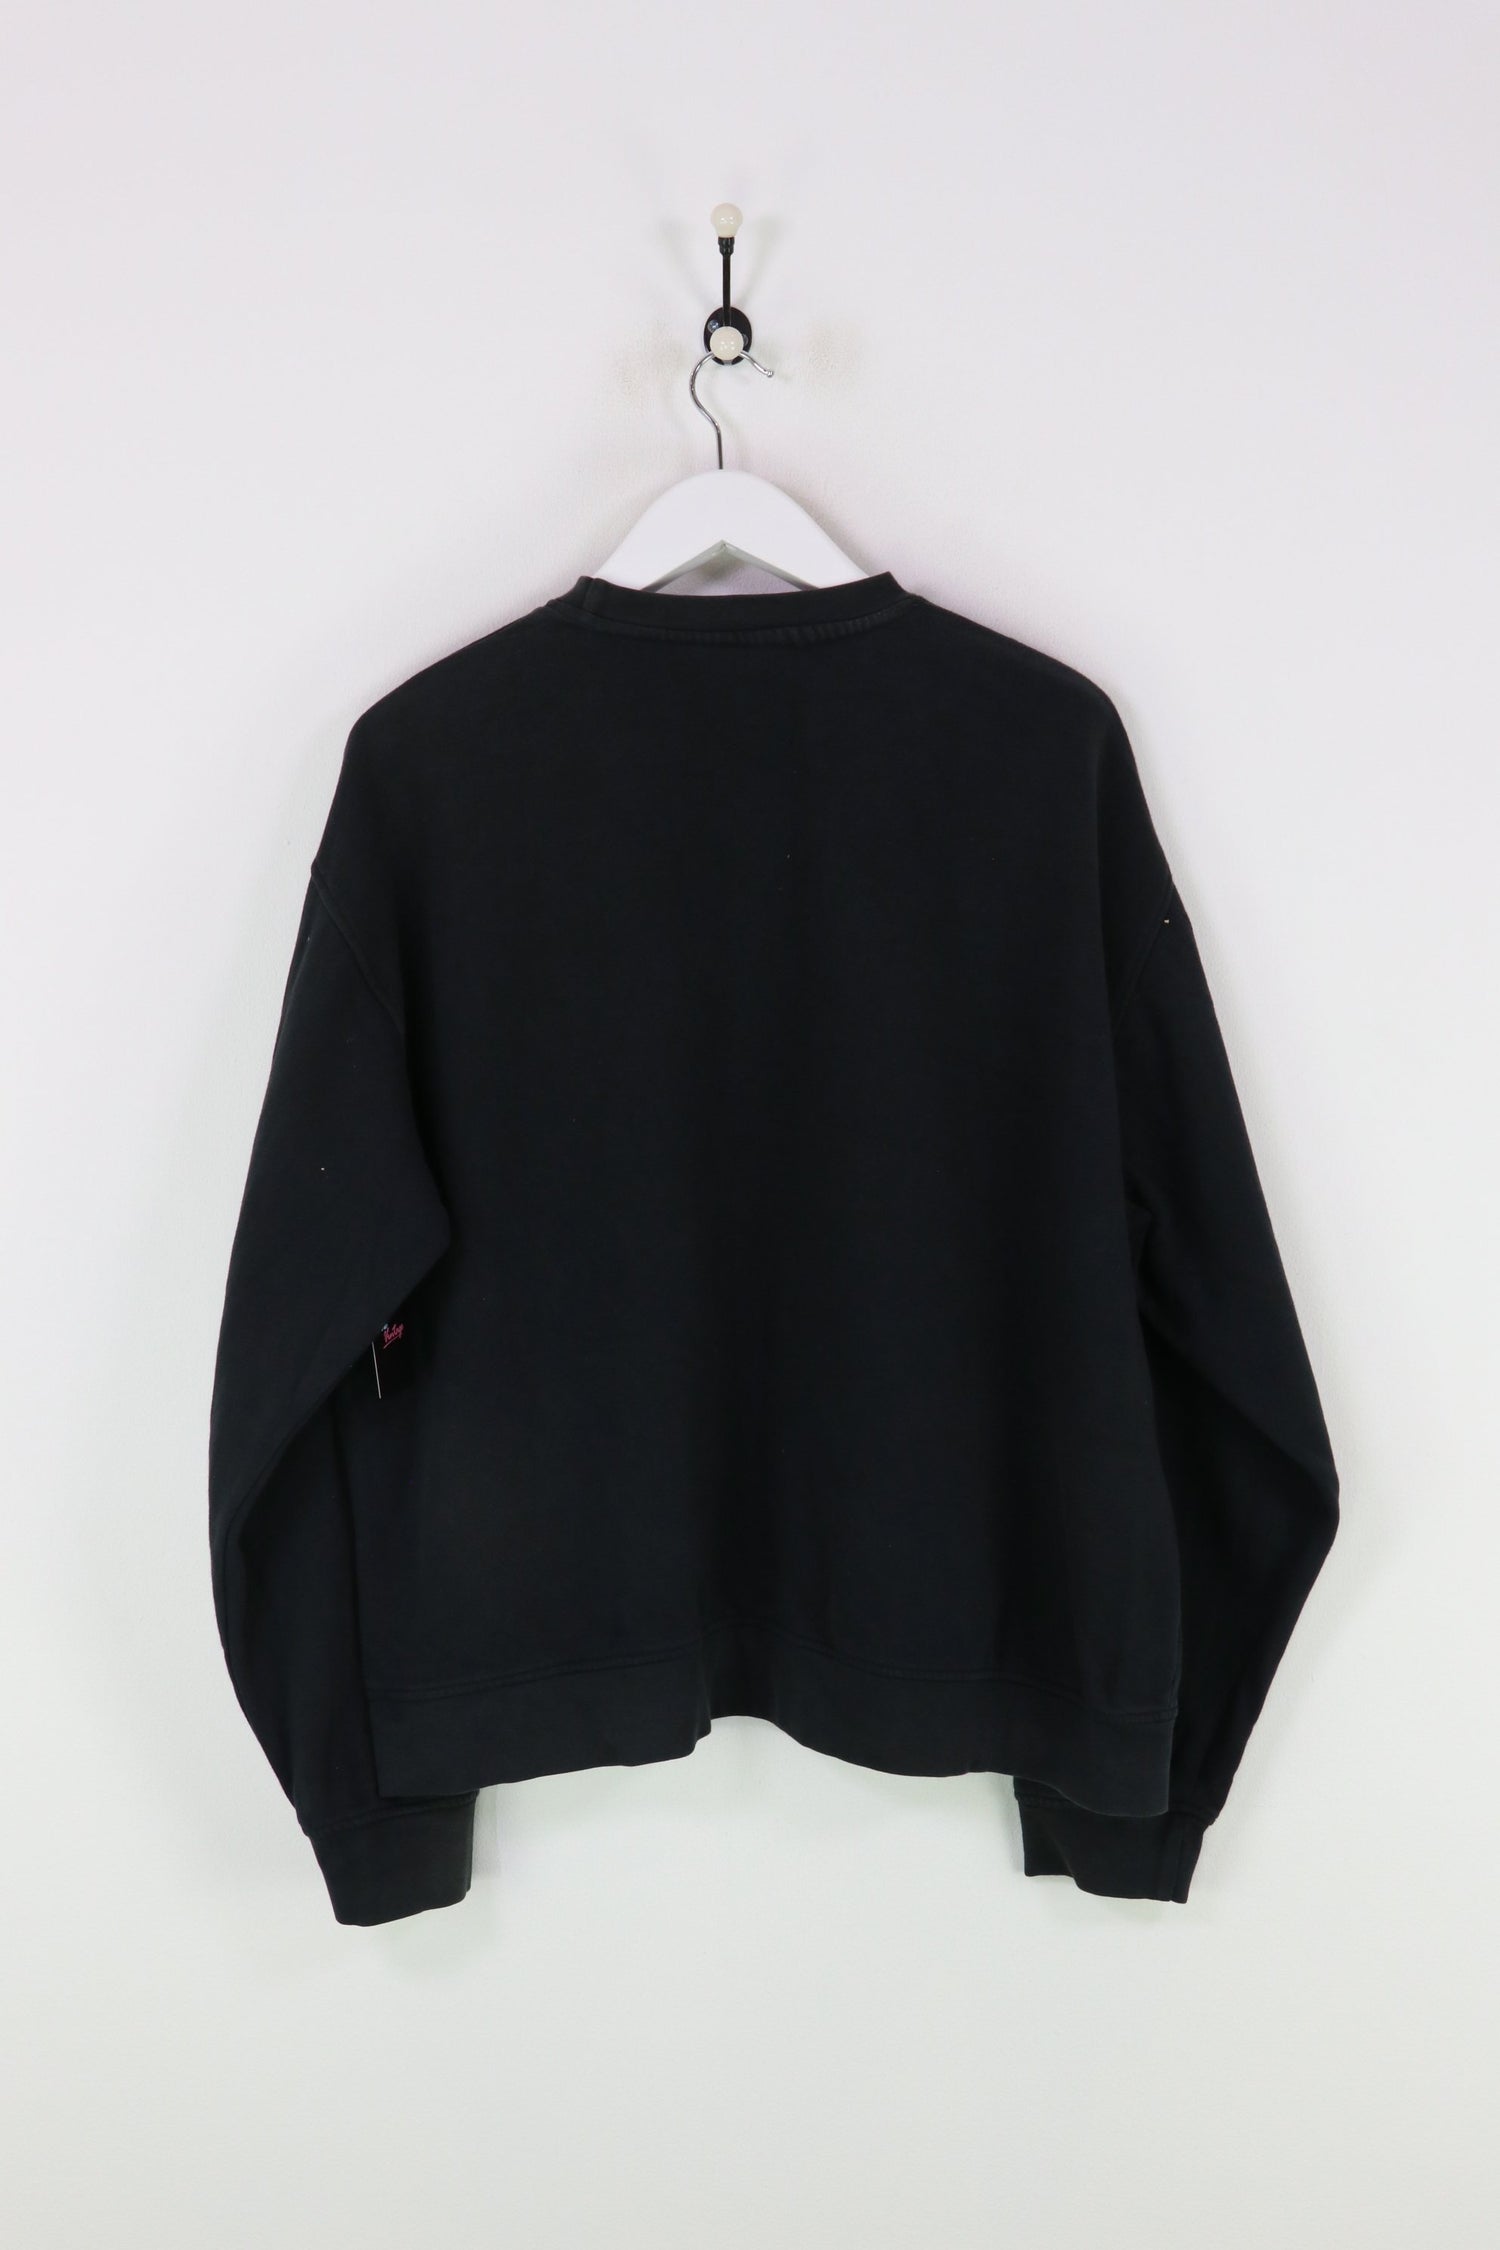 Kappa Sweatshirt Black/White XL